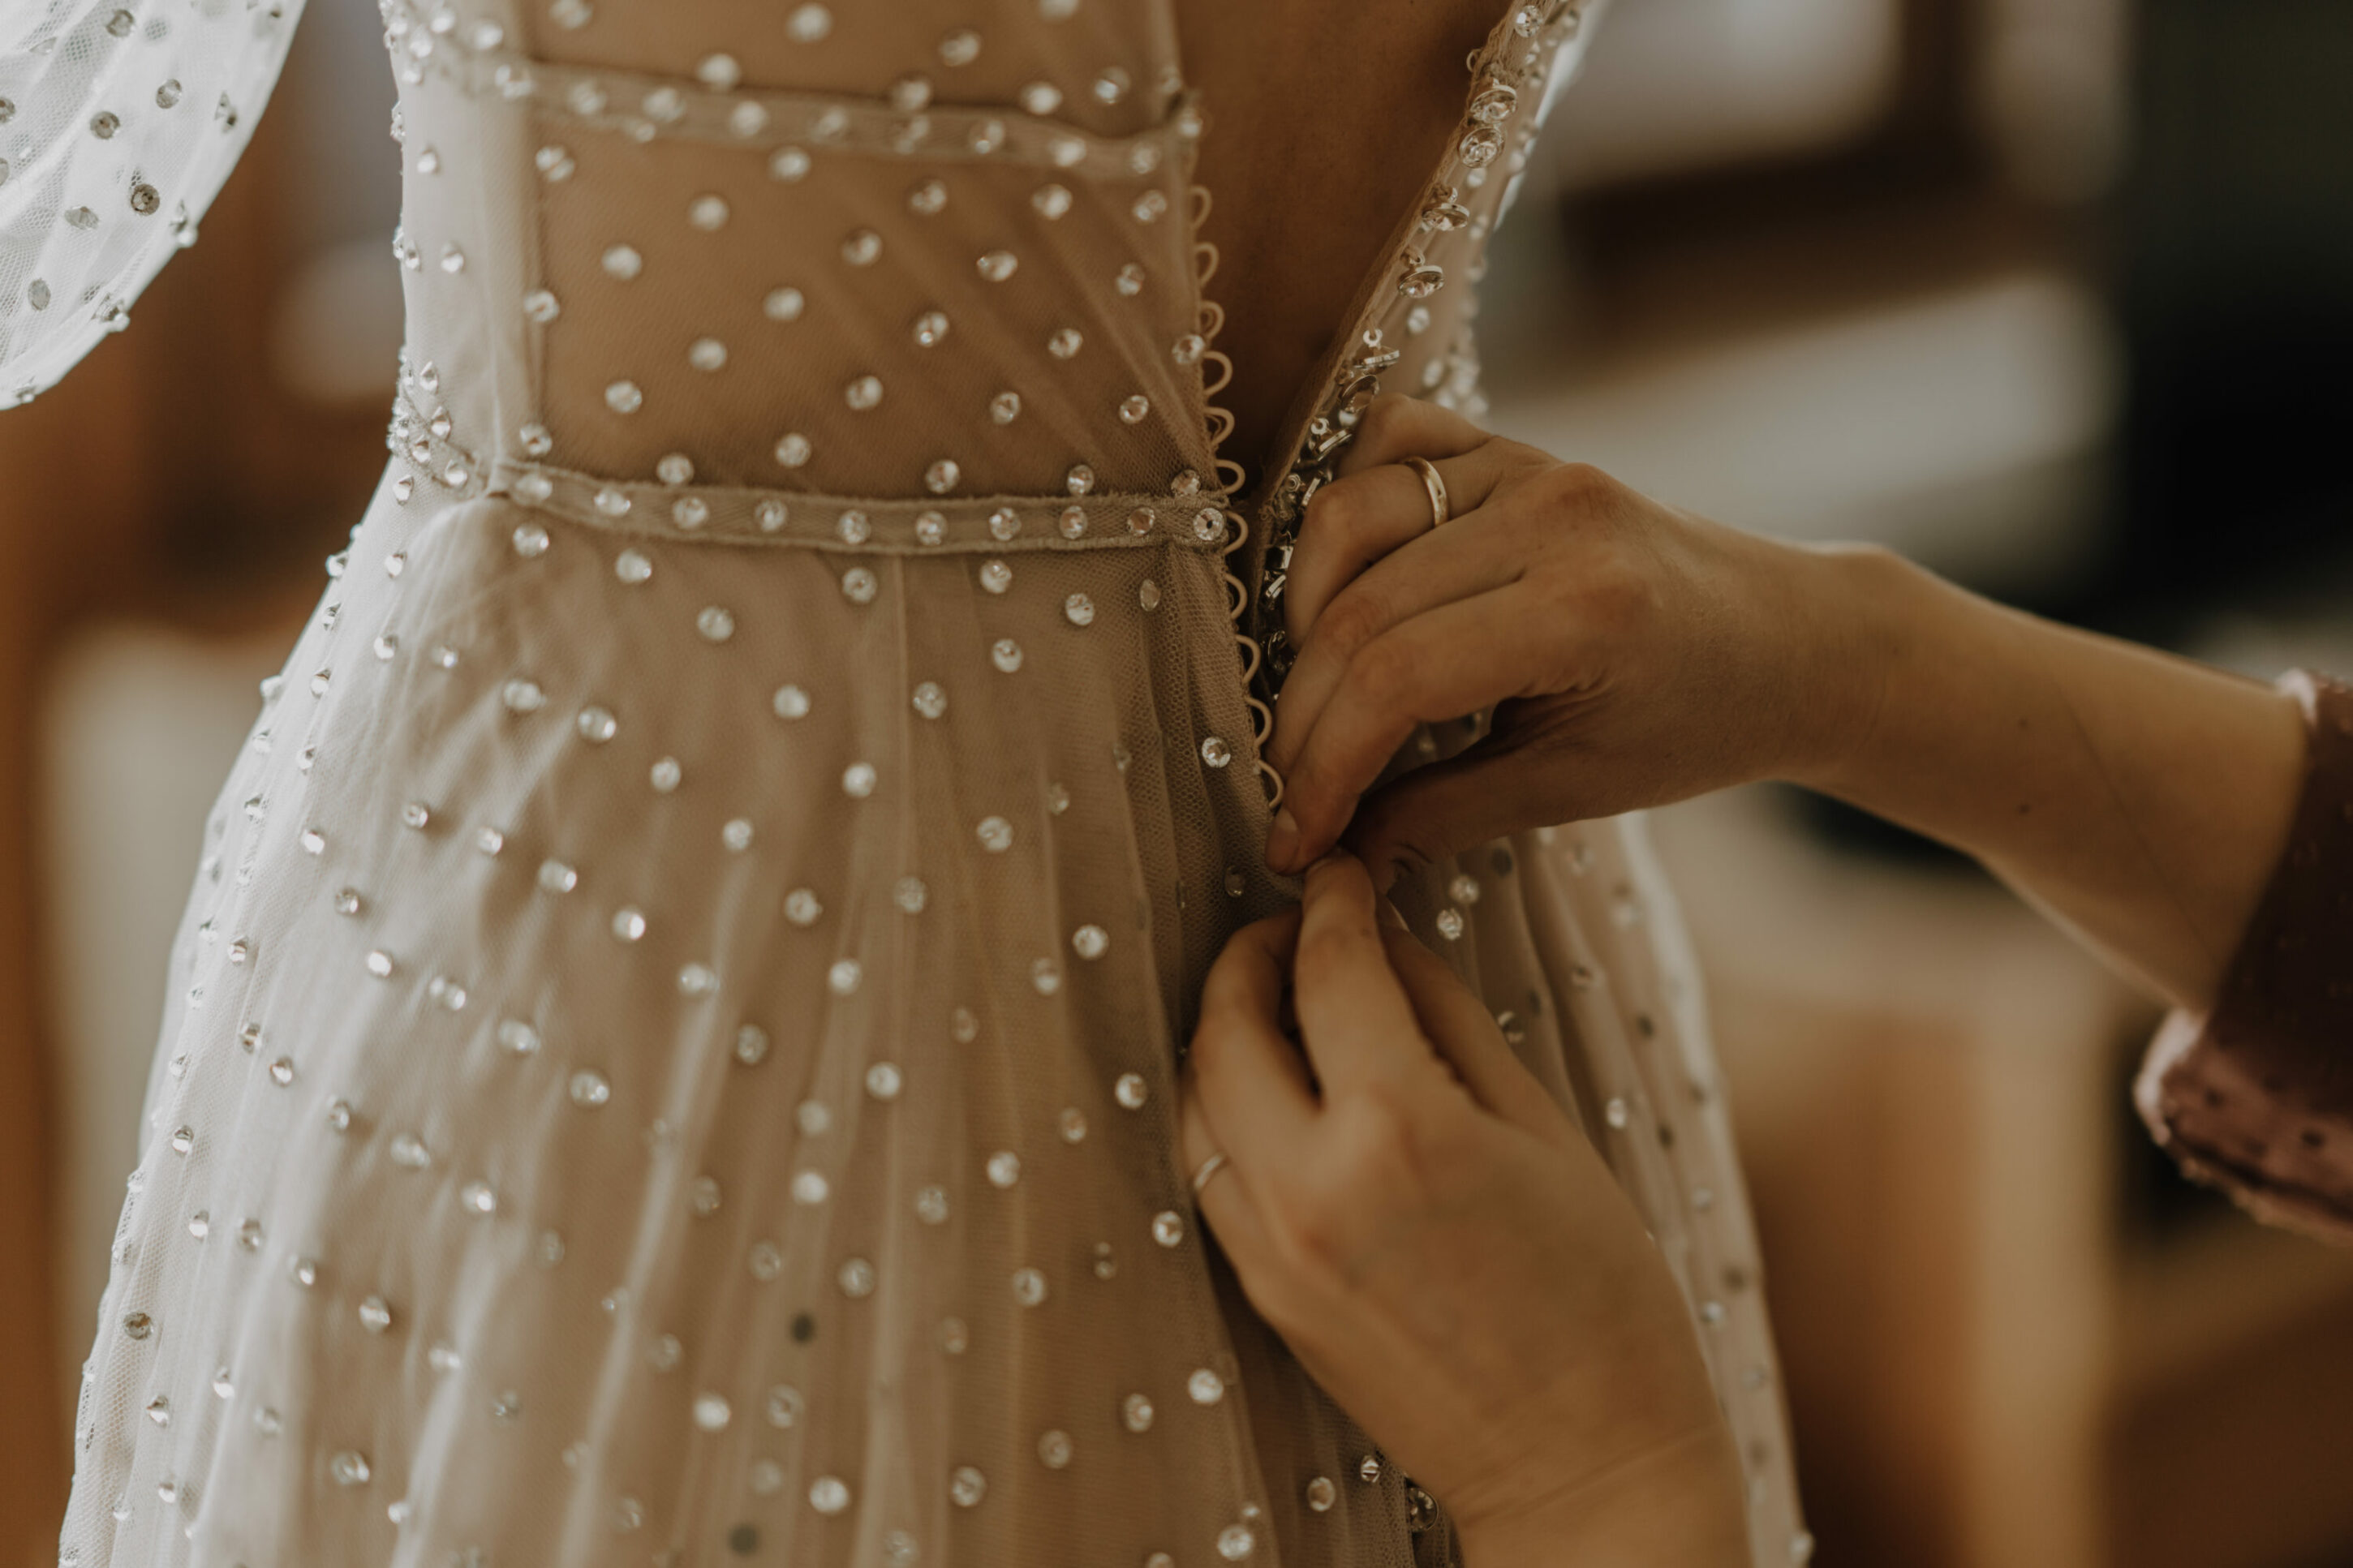 Knopfleiste Hochzeitskleid wird zugeknöpft am Rücken